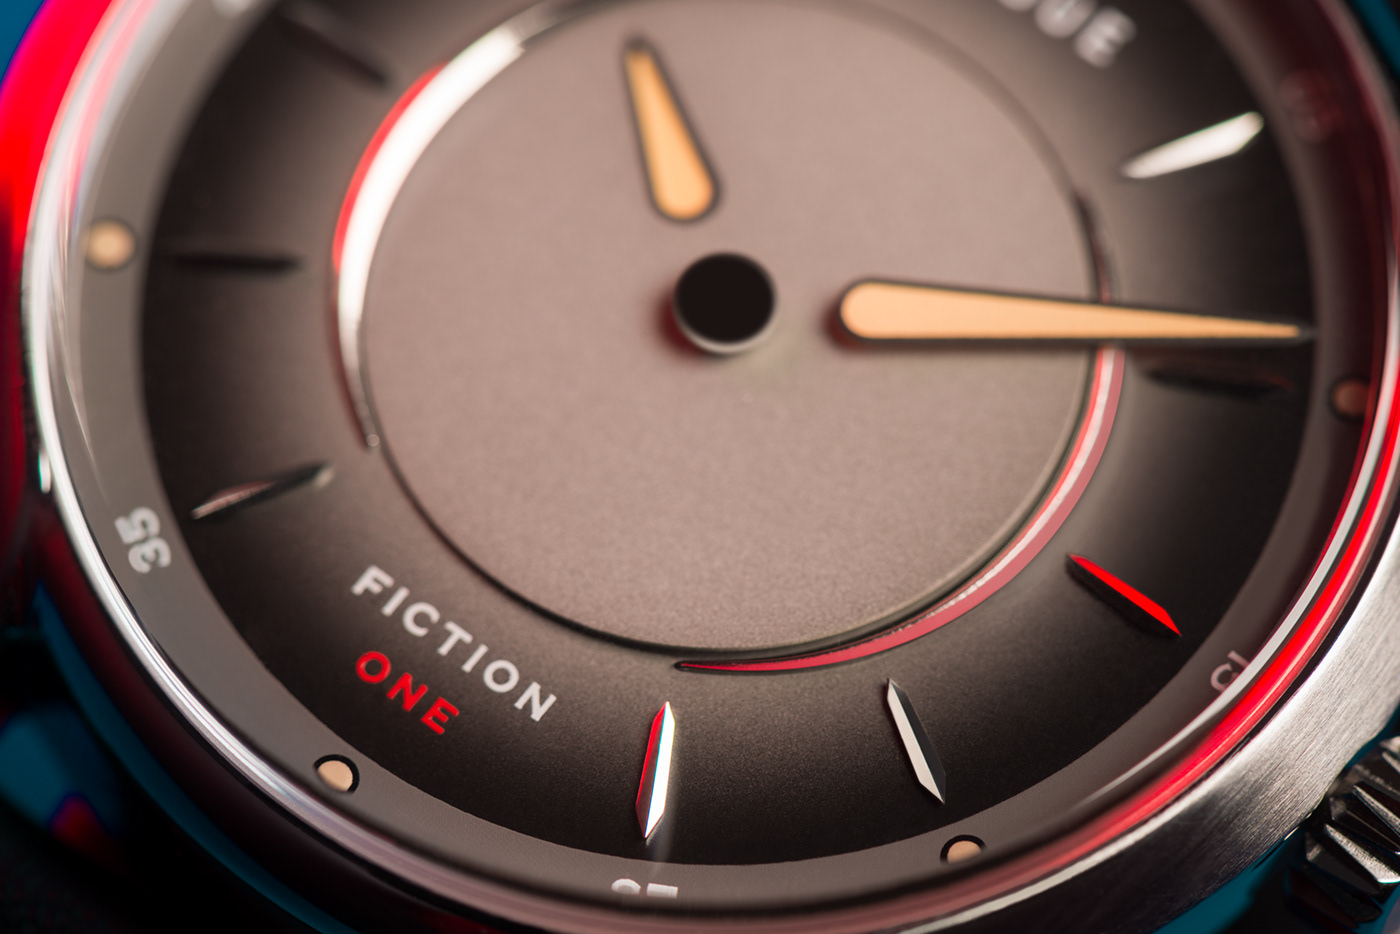 Floating hands fugue watches horlogerie horology Kickstarter montre watch Watch concept watch design Watches